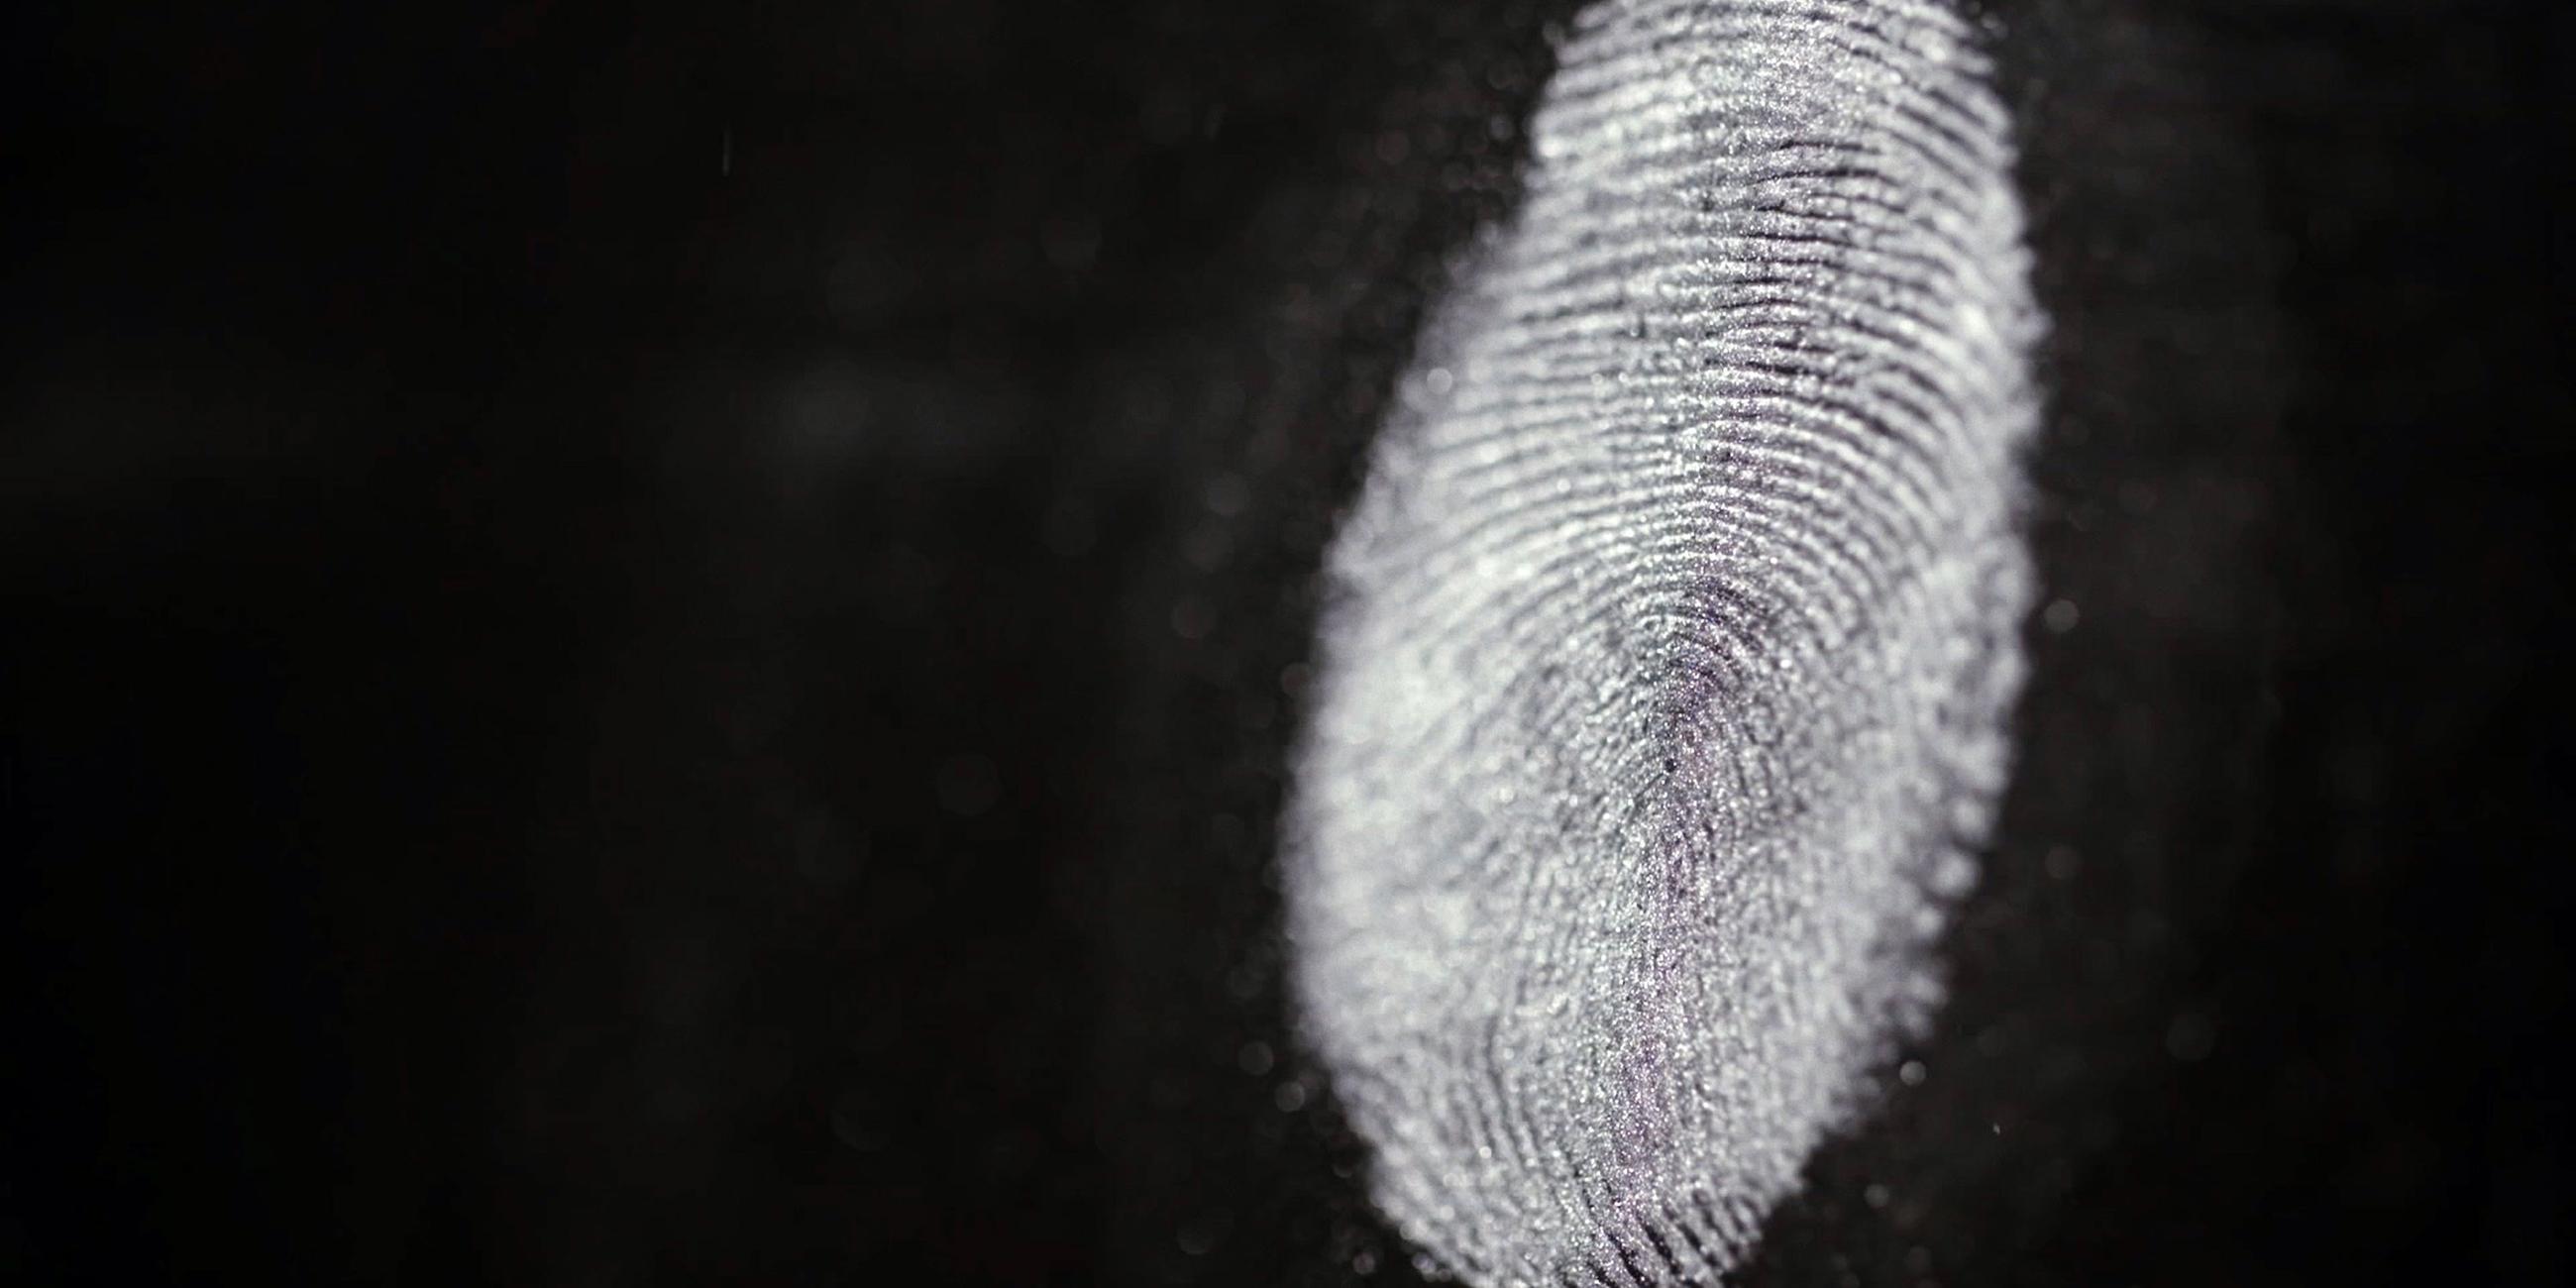 "Auf der Spur des Verbrechens - Forensiker im Einsatz: Genetischer Fingerabdruck": Nahaufnahme eines Fingerabdrucks. Erkennbar sind die einzigartigen Linien in der Haut.